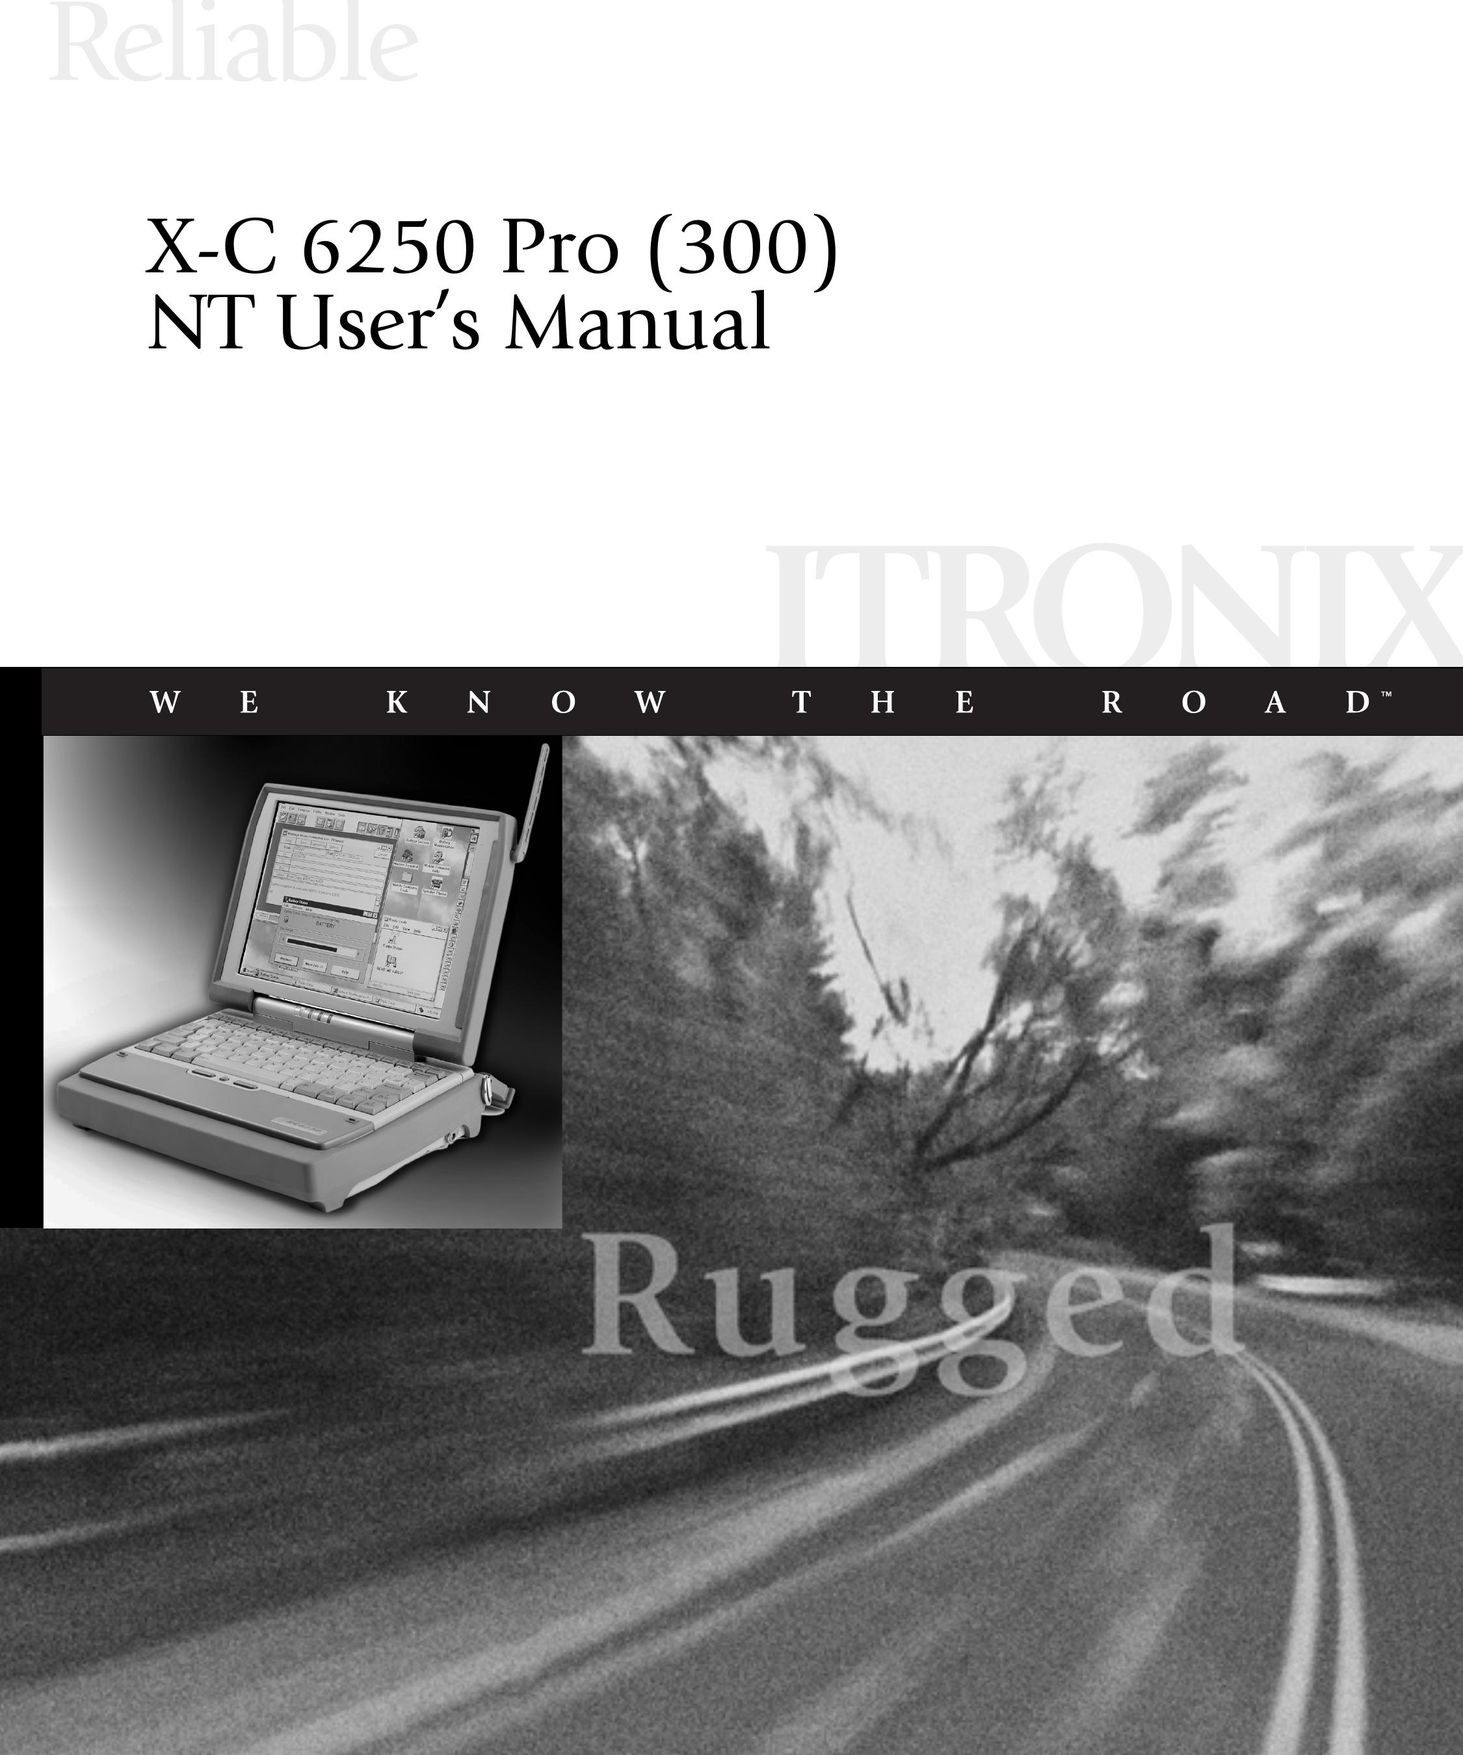 Cingular X-C 6250 Pro (300) Laptop User Manual